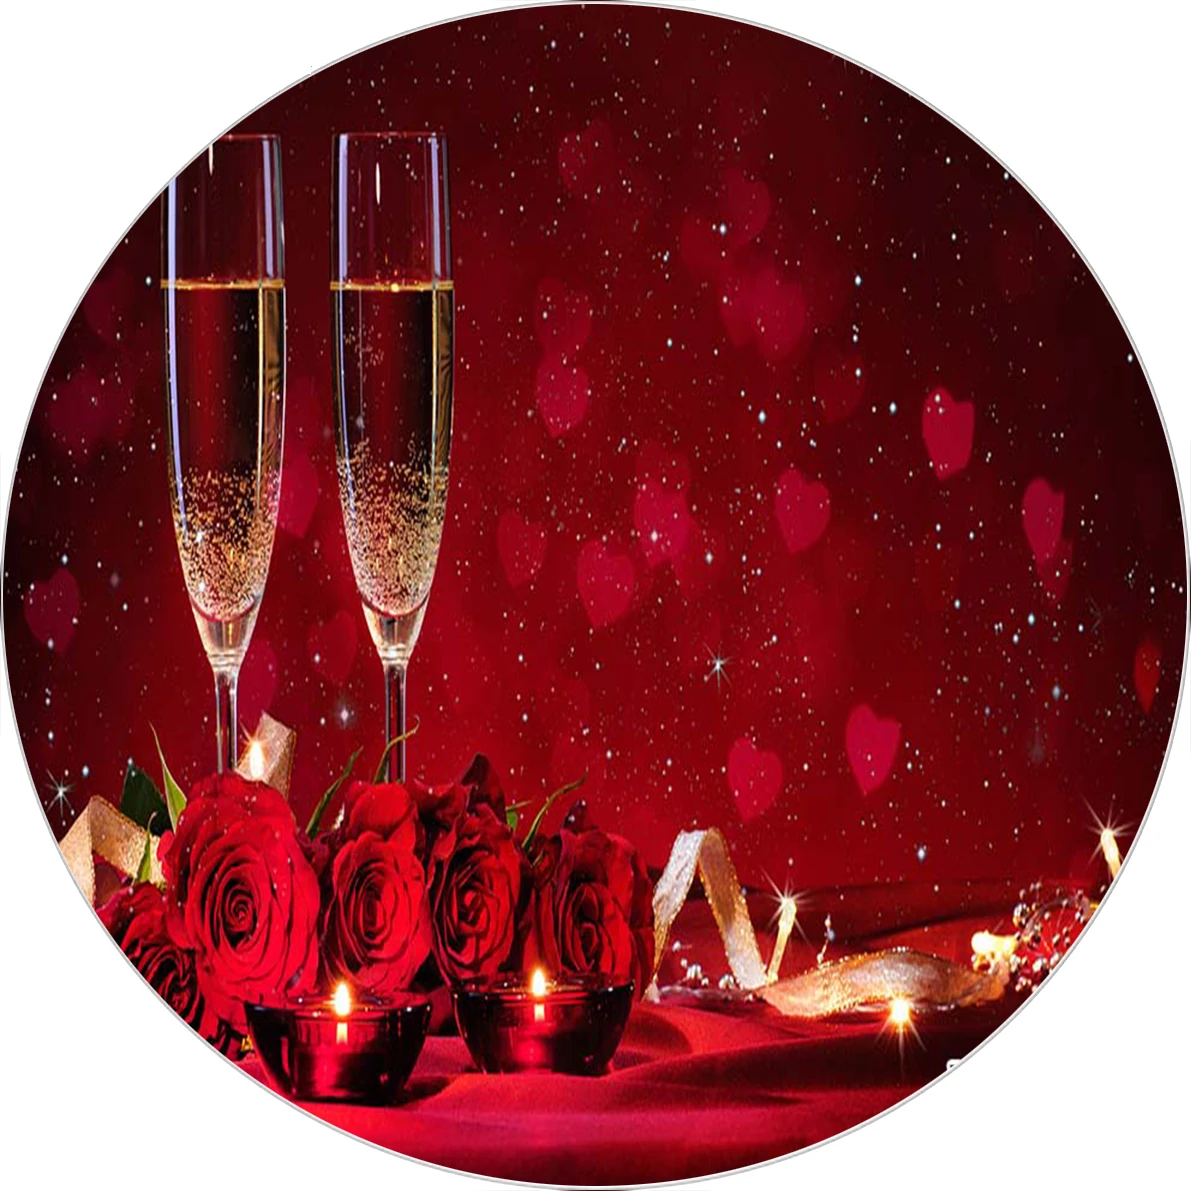 Fondo de fotografía del Día de San Valentín con velas cena dulce amor fondo  de tela fondos de pantalla familiares para fotografía vinilo|Fondo| -  AliExpress